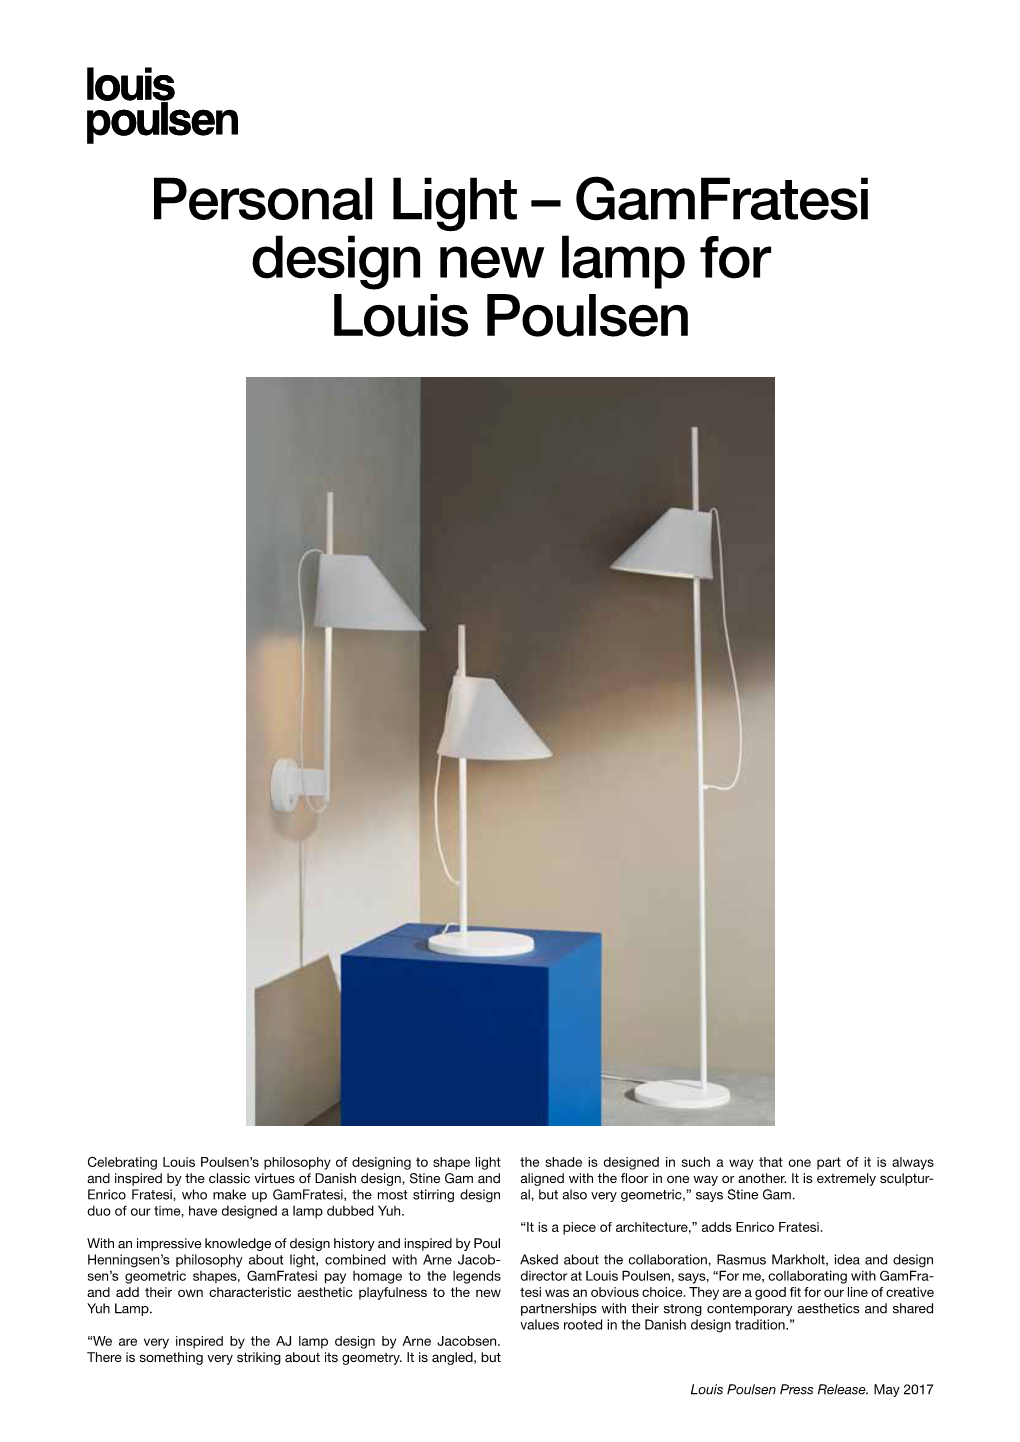 Personal Light – Gamfratesi Design New Lamp for Louis Poulsen